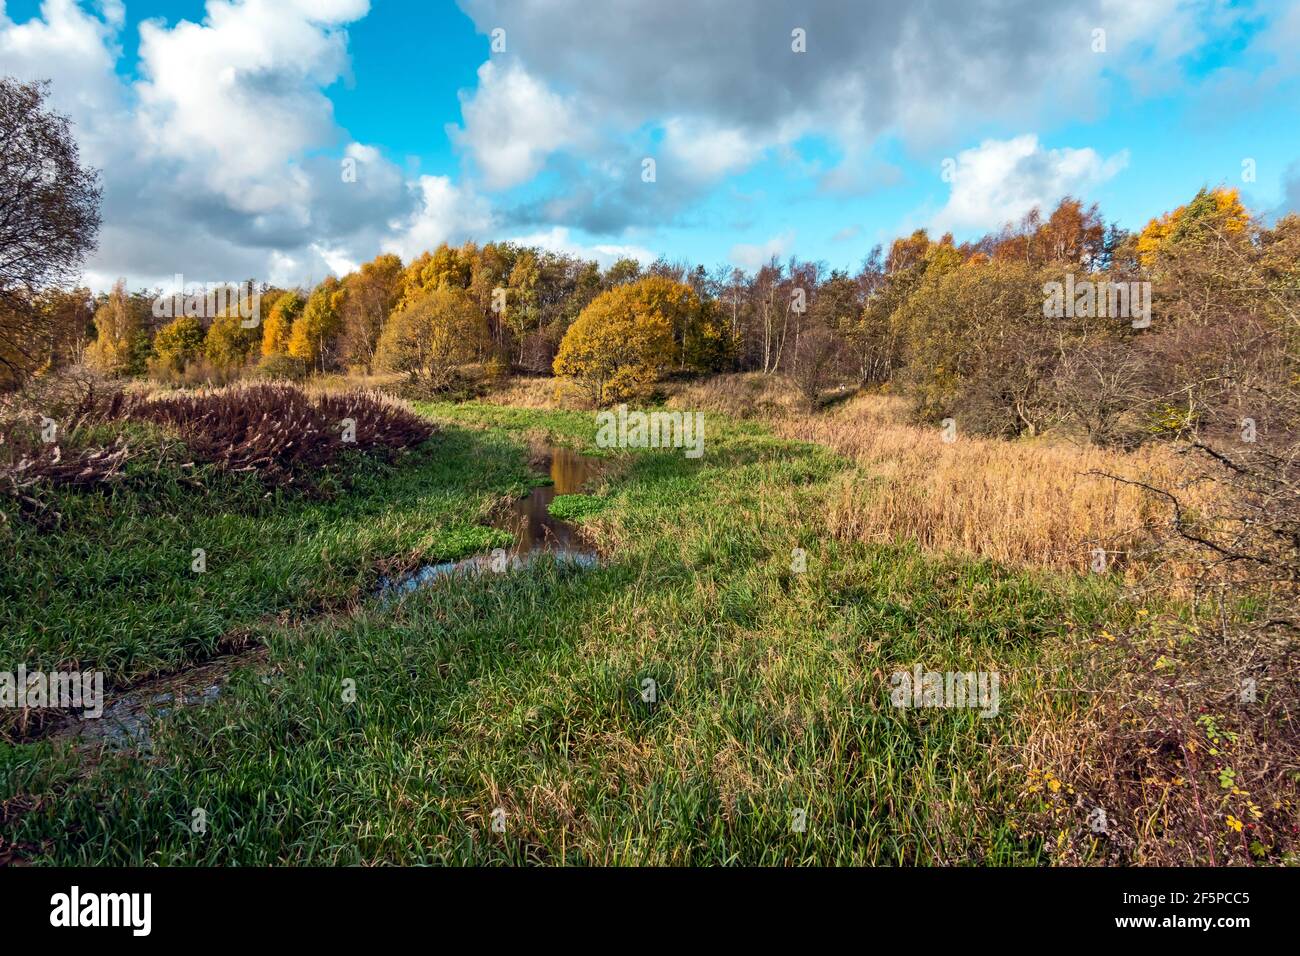 Herbstfarben an den stillstehenden schottischen Kanälen im Besitz von Monkland Canal in der Nähe Calderbank in Lanarkshire Scotlanld UK, wo Kanalschiff Vulcan Wurde gebaut Stockfoto